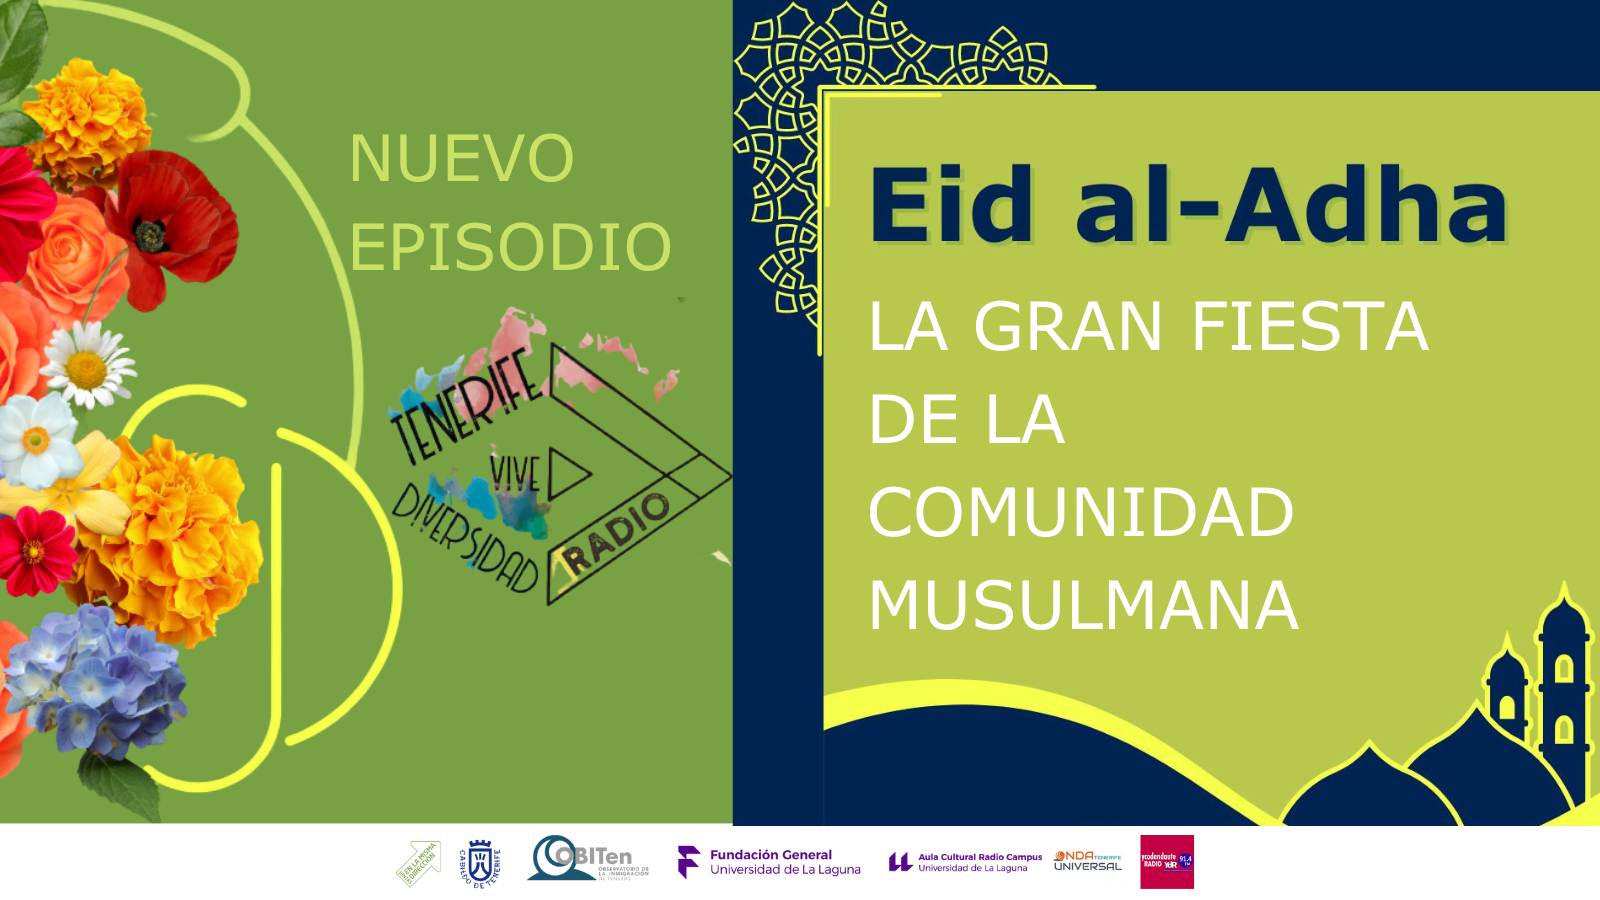 TvD Radio: Eid al-Adha, la gran fiesta de la comunidad musulmana